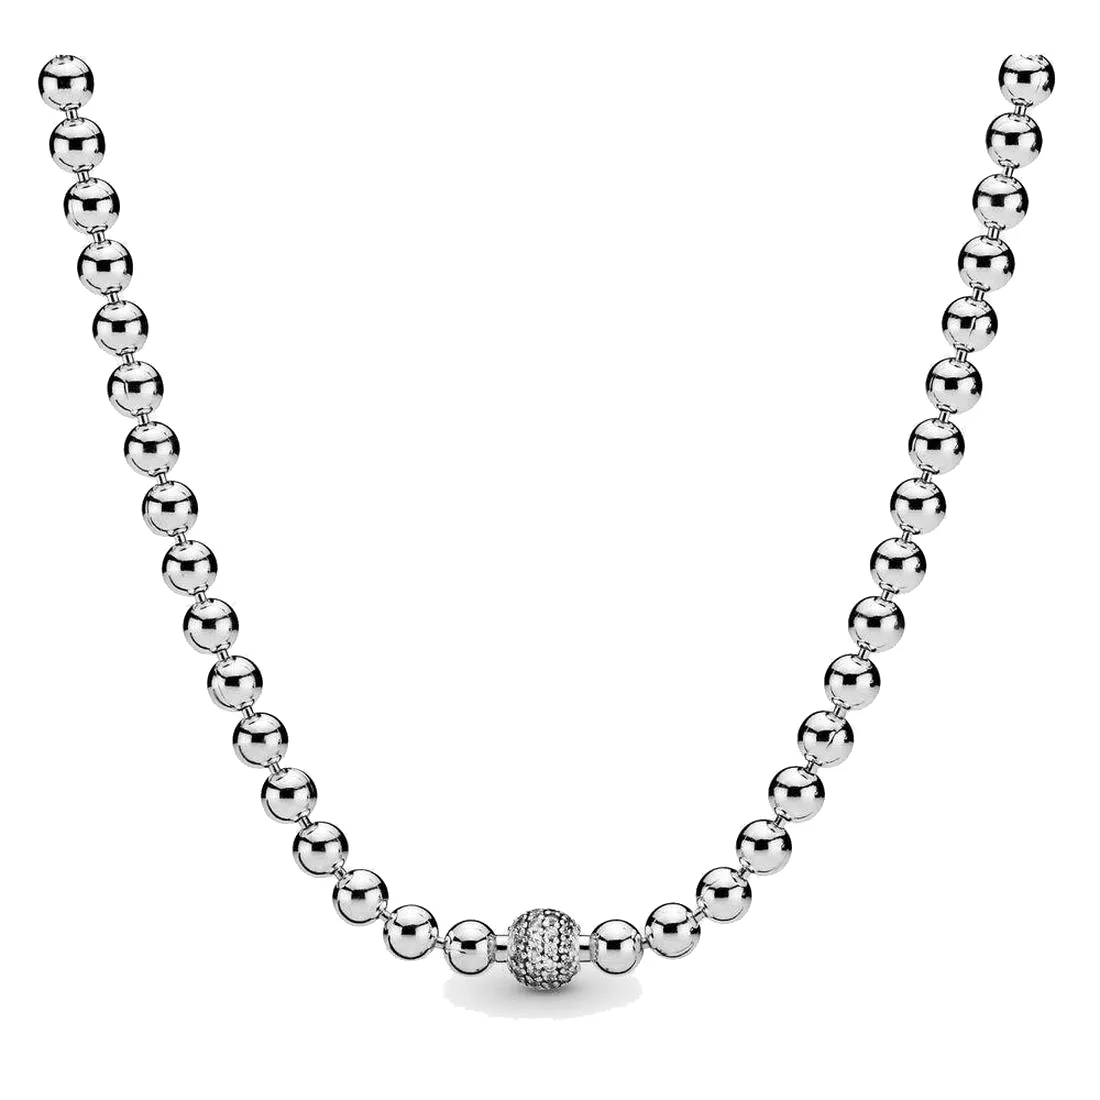 Joyería fina Auténtico collar de plata esterlina 925 Fit Pandora Colgante Charm Beads Pave Collar brillante grano brillante Amor Compromiso DIY Collares de boda